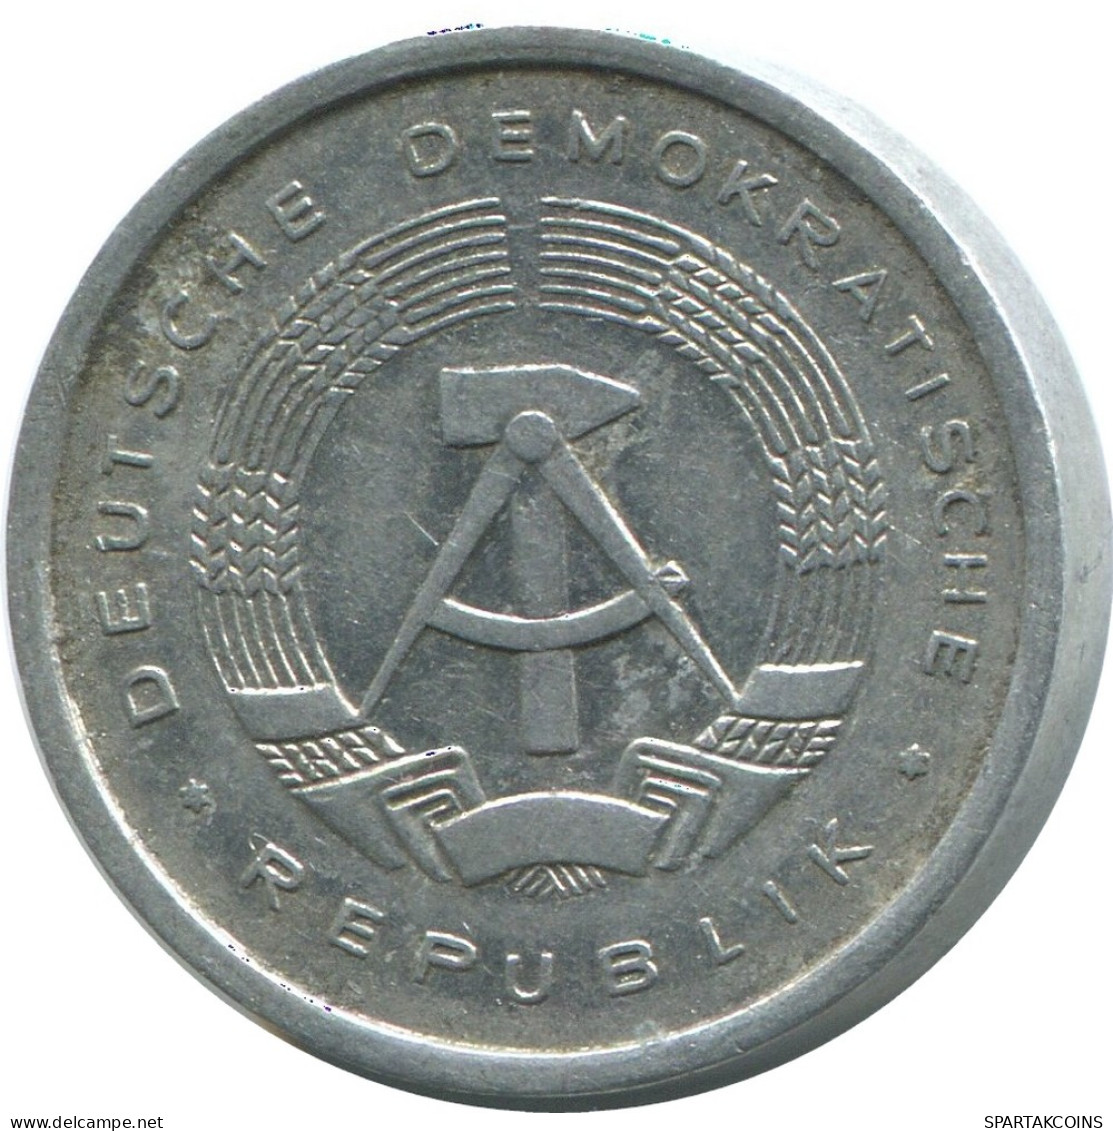 5 PFENNIG 1978 A DDR EAST ALEMANIA Moneda GERMANY #AE006.E - 5 Pfennig